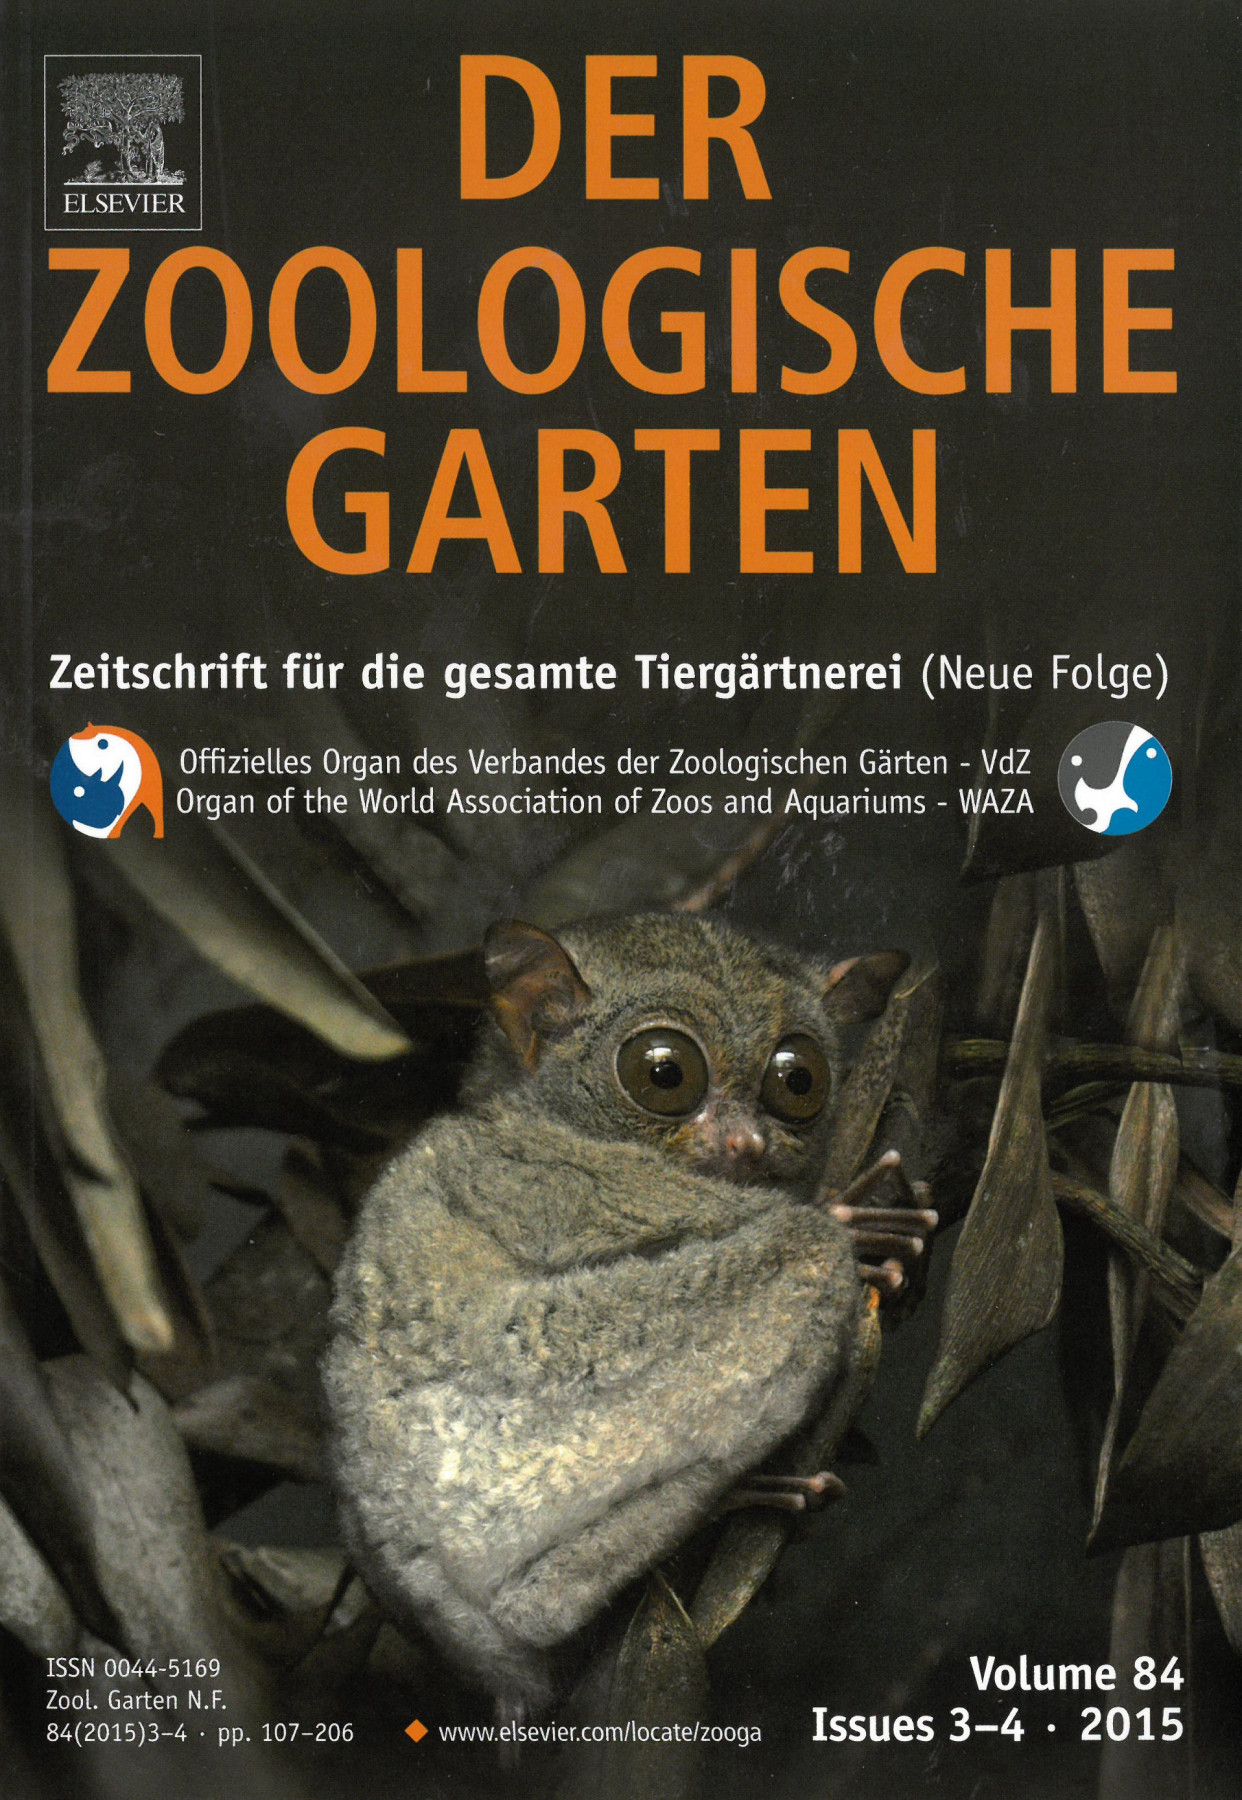 Titelseite von Der Zoologische Garten mit Foto von Gleitbeutler